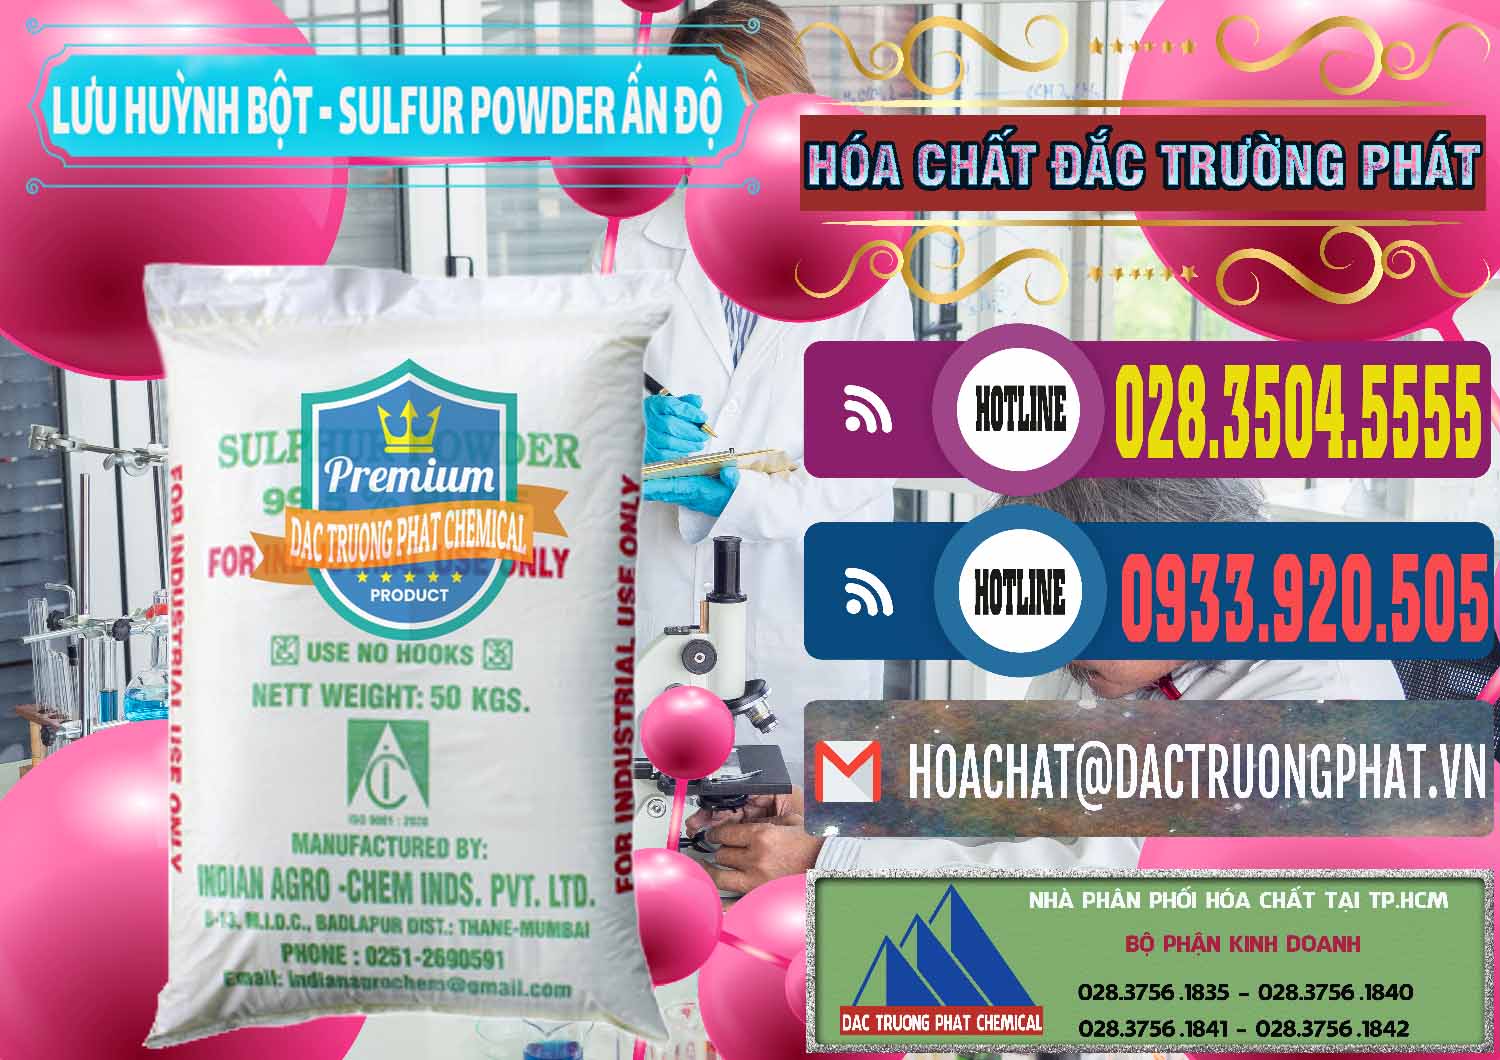 Cty nhập khẩu _ bán Lưu huỳnh Bột - Sulfur Powder Ấn Độ India - 0347 - Công ty phân phối ( bán ) hóa chất tại TP.HCM - muabanhoachat.com.vn